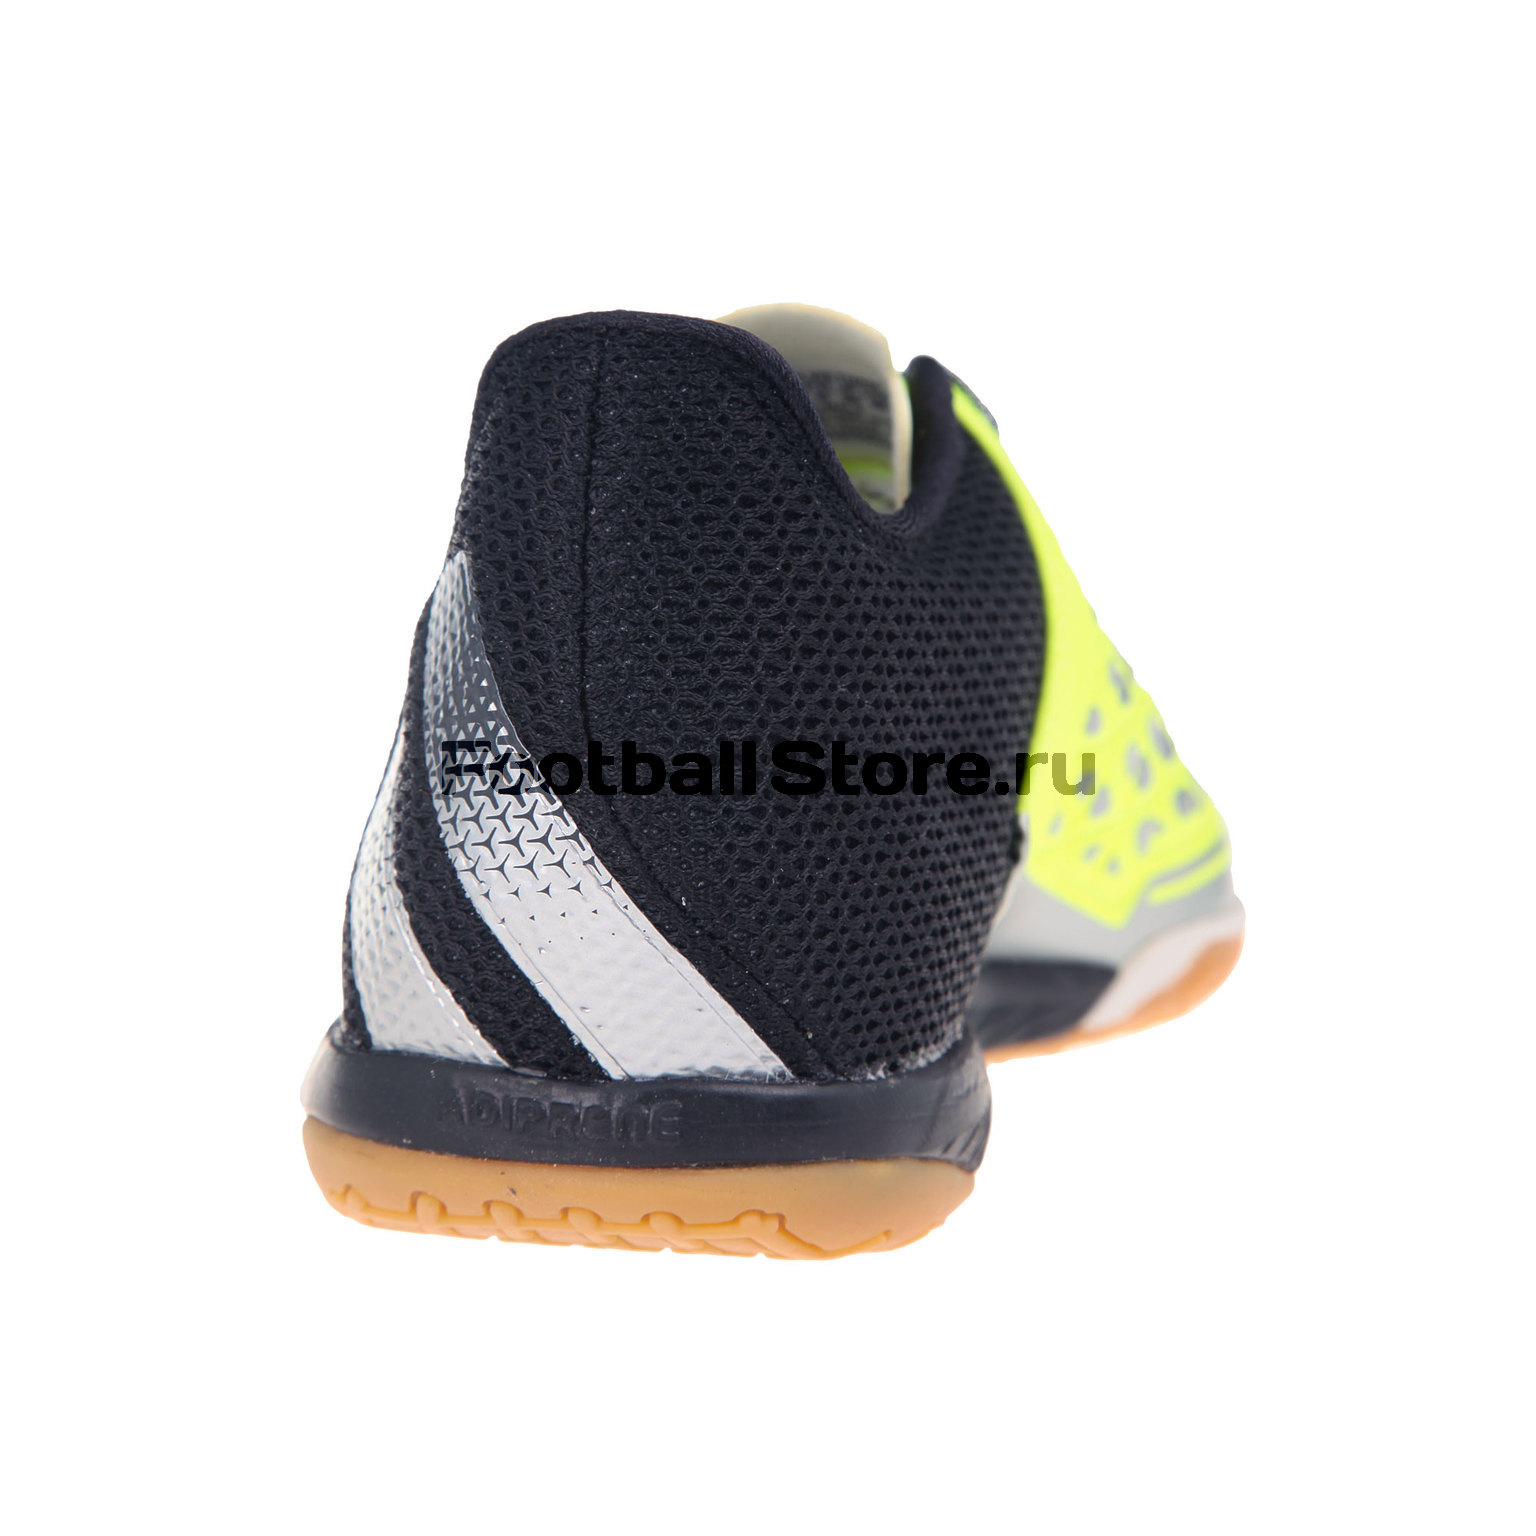 Обувь для зала Adidas Ace 16.2 Court S31932